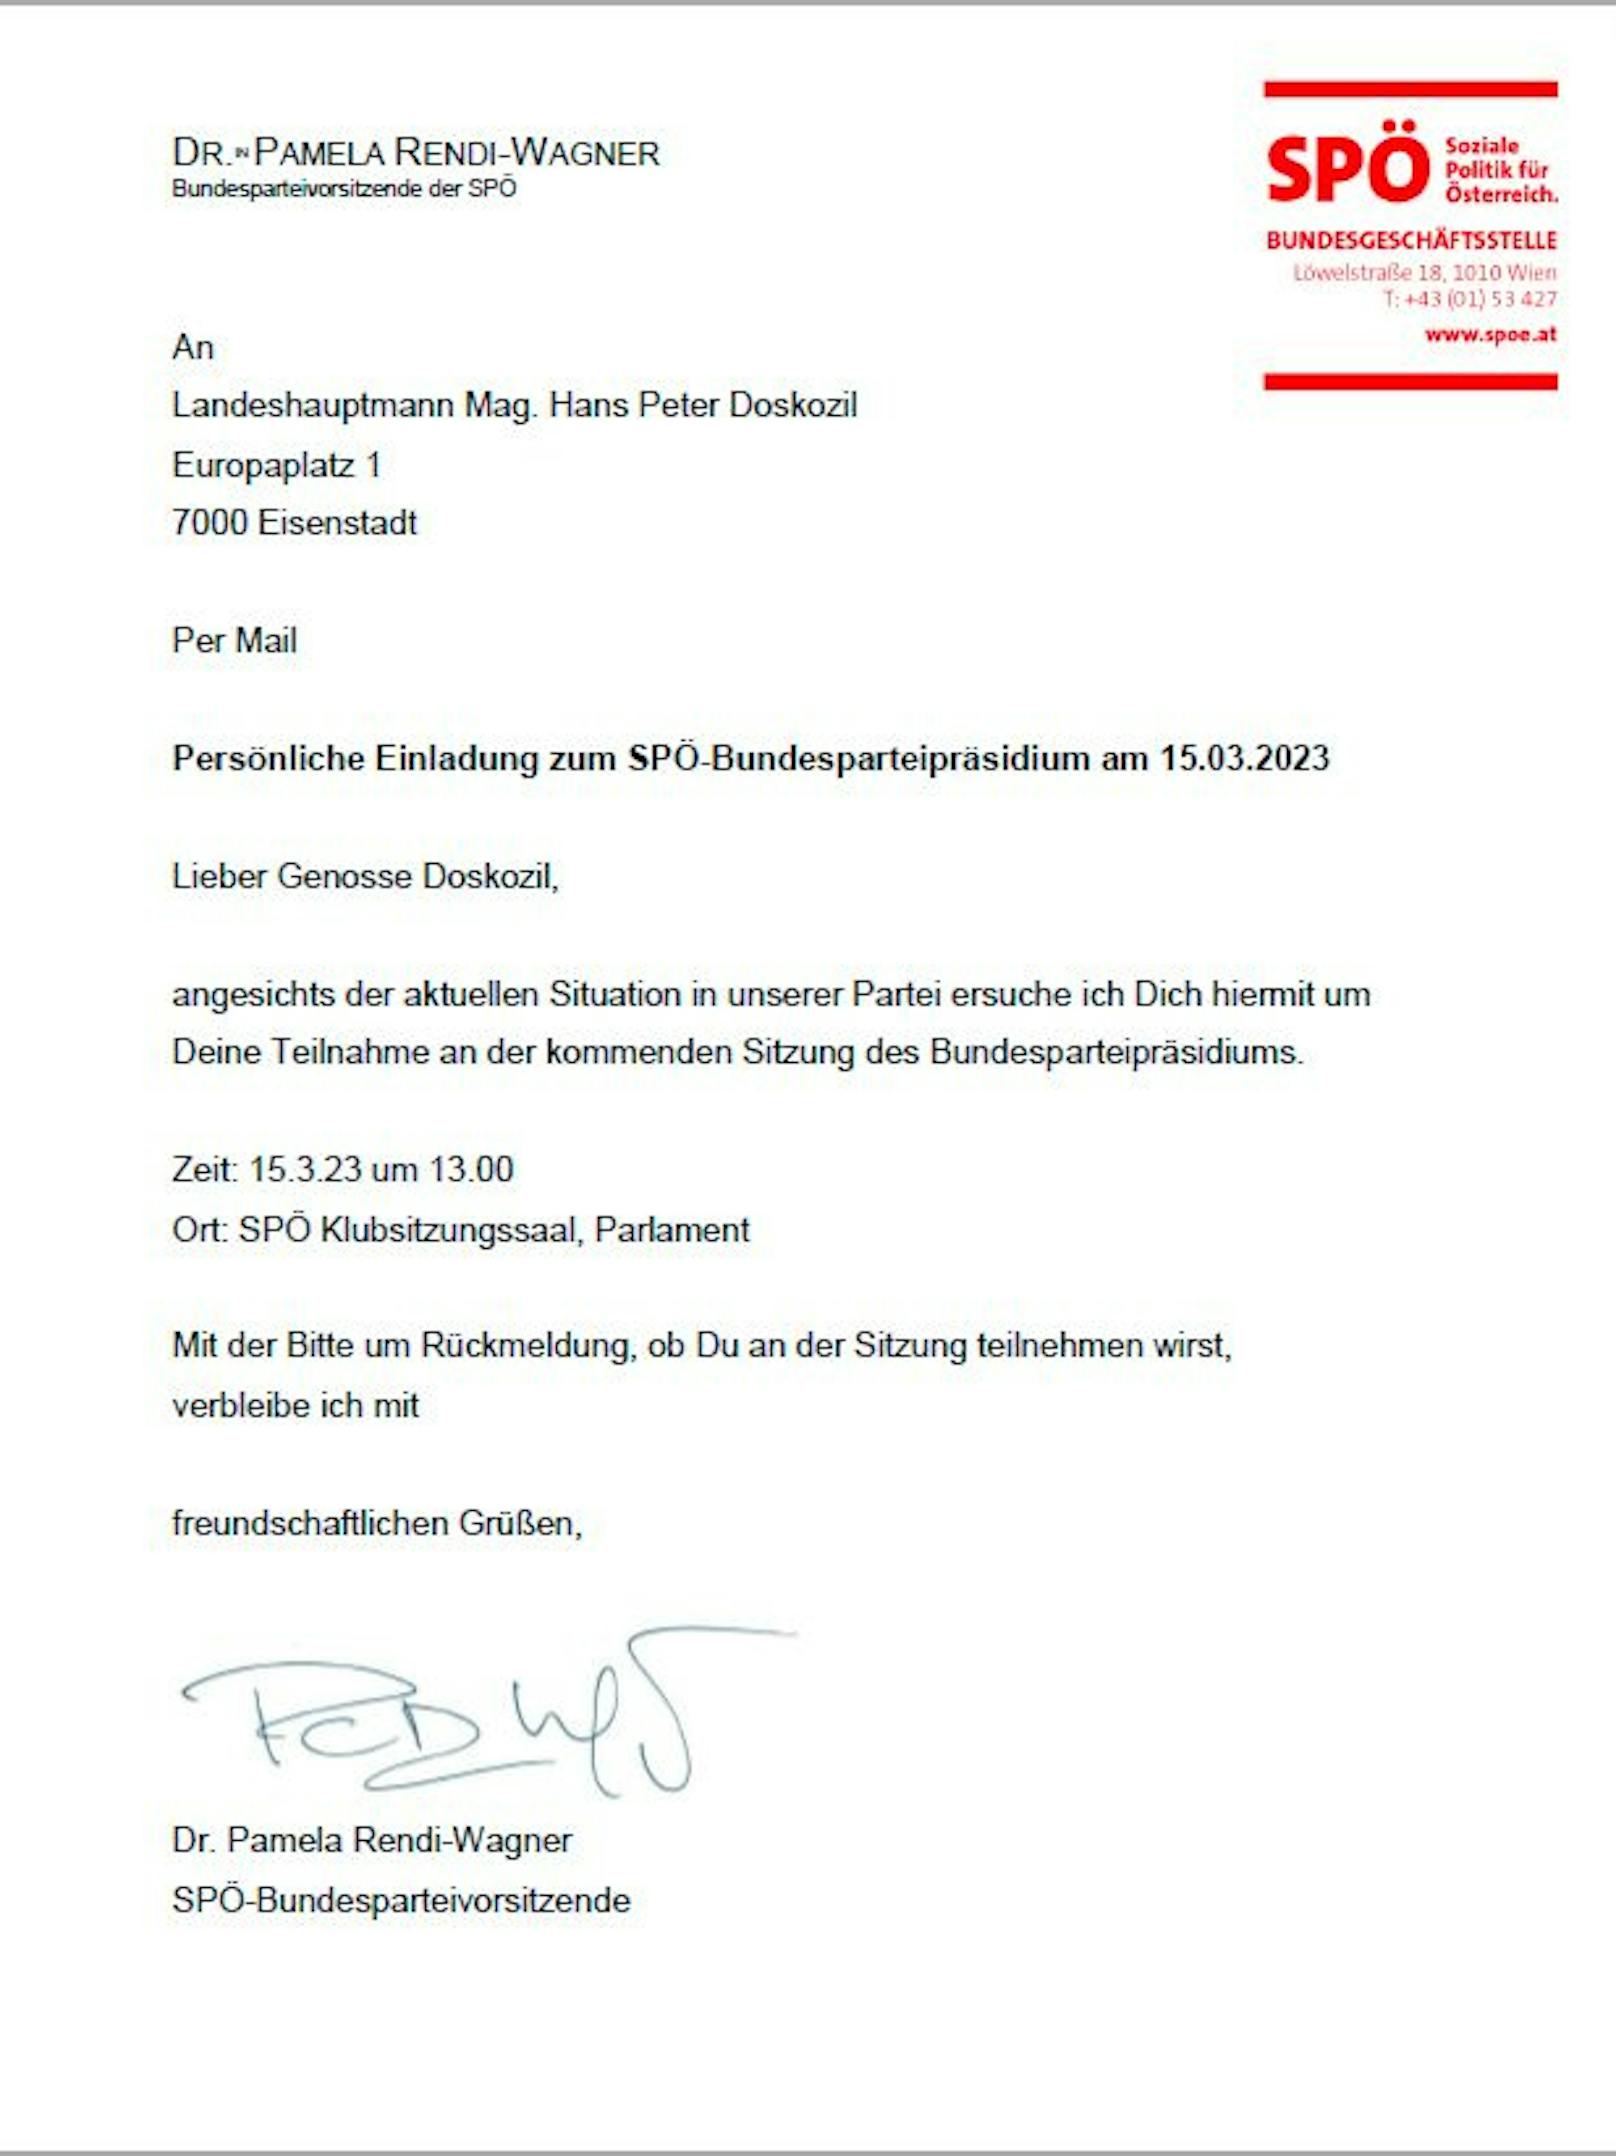 Der Brief von Pamela Rendi-Wagner an ihren Parteifreund Hans Peter Doskozil